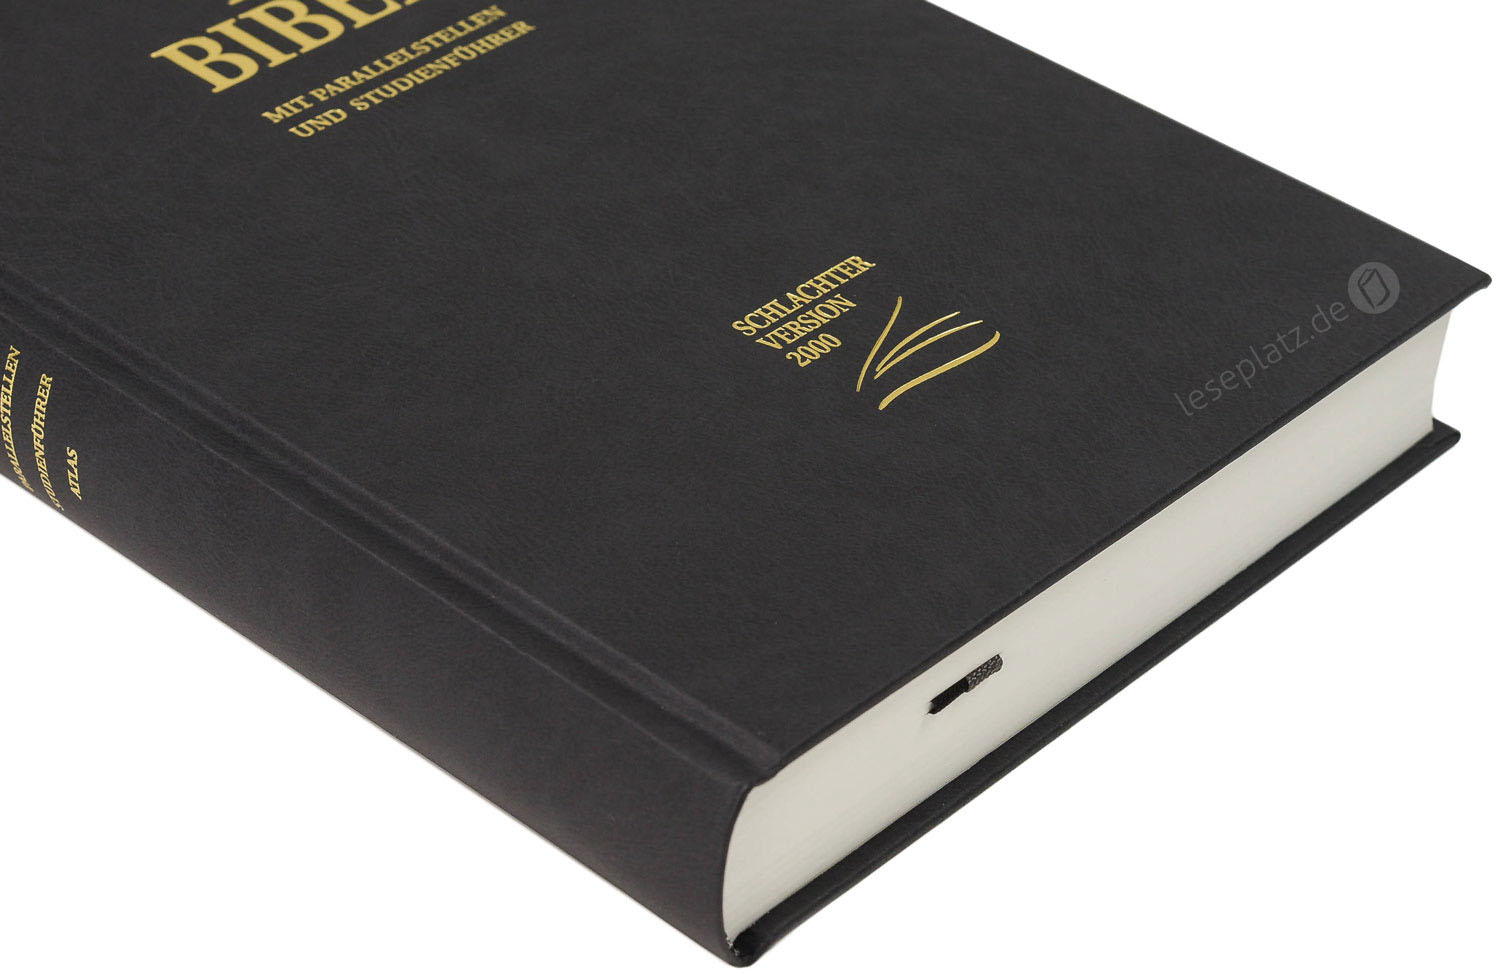 Schlachter 2000 Standardausgabe - Hardcover schwarz